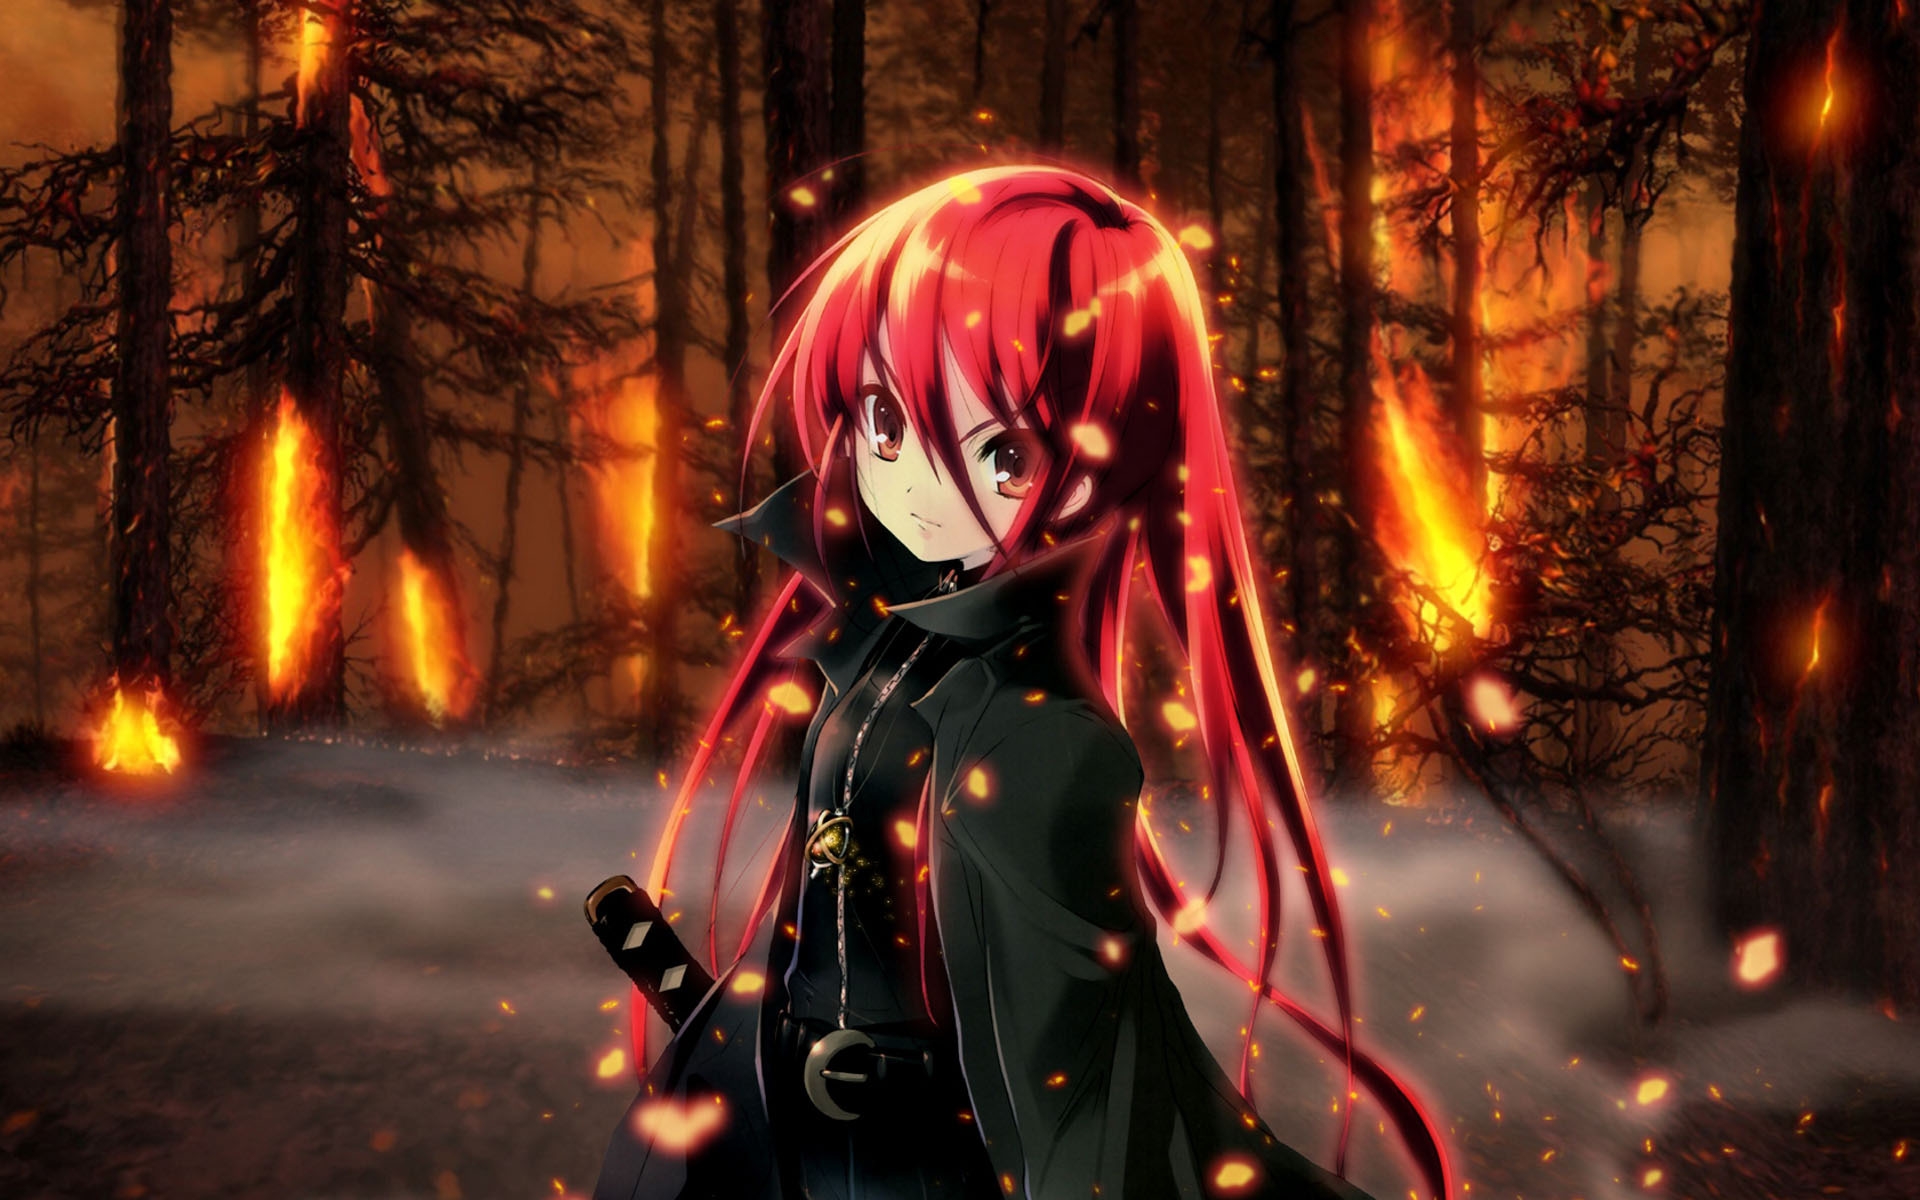 anime girl holding fire